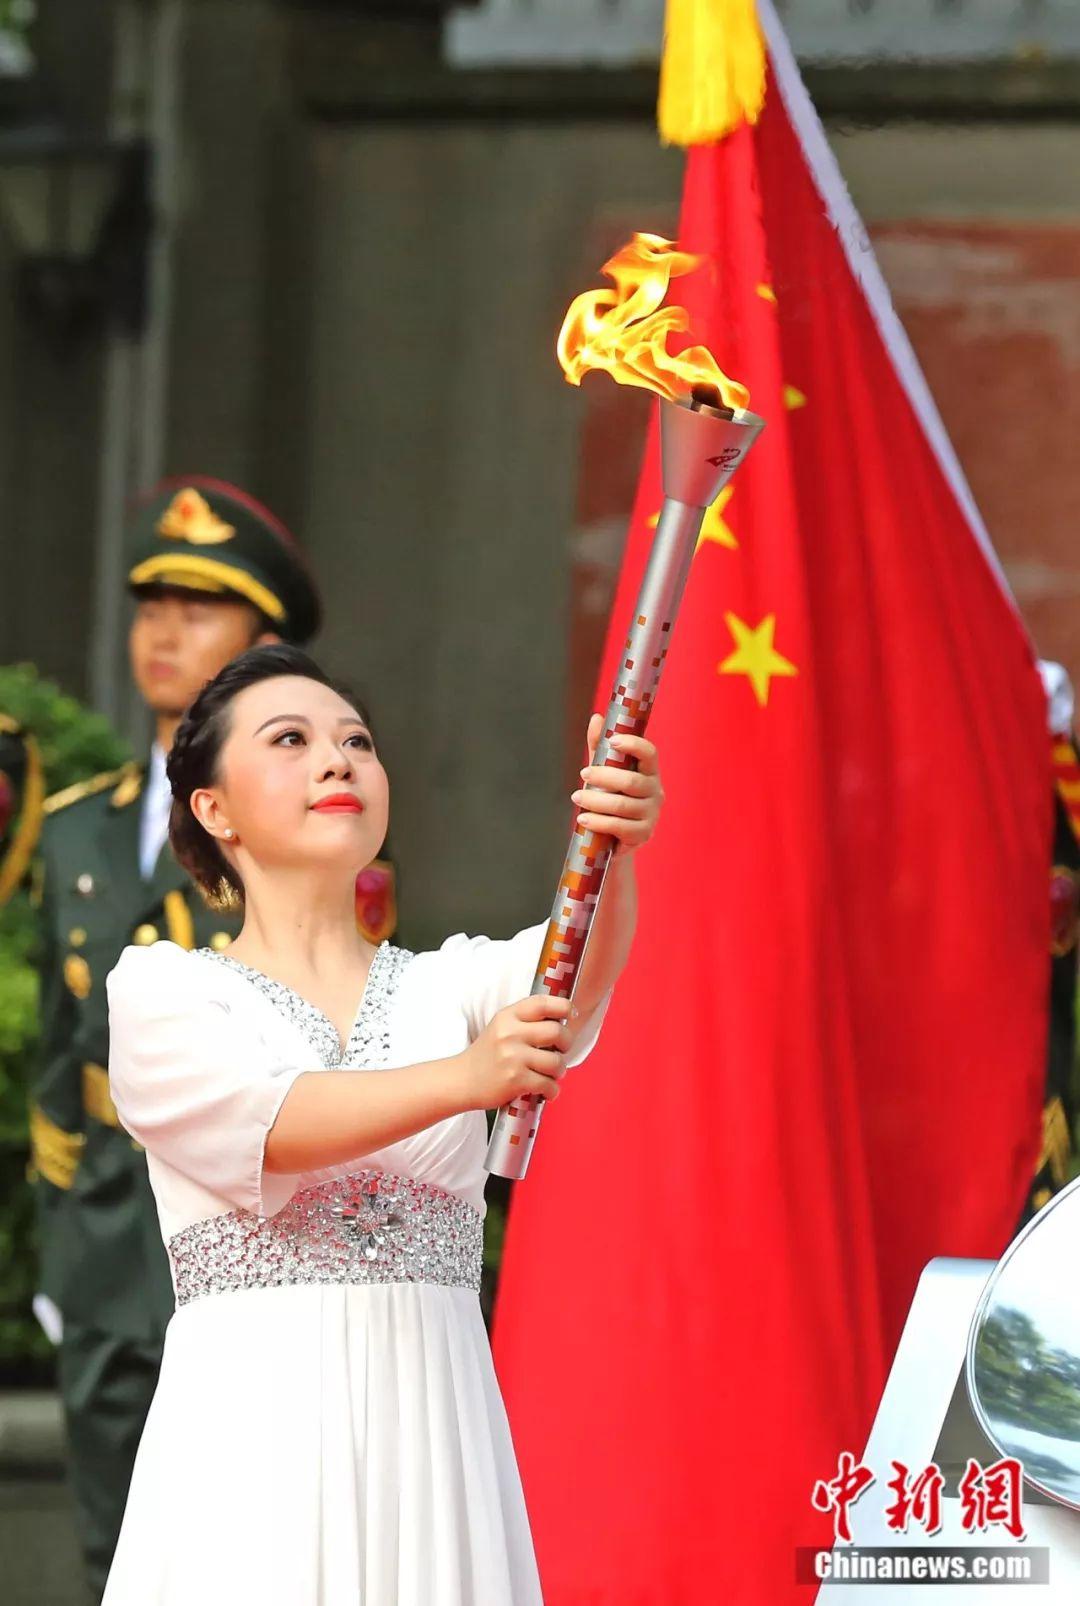 英雄城，第一棒 世界军人运动会火炬传递在南昌启动